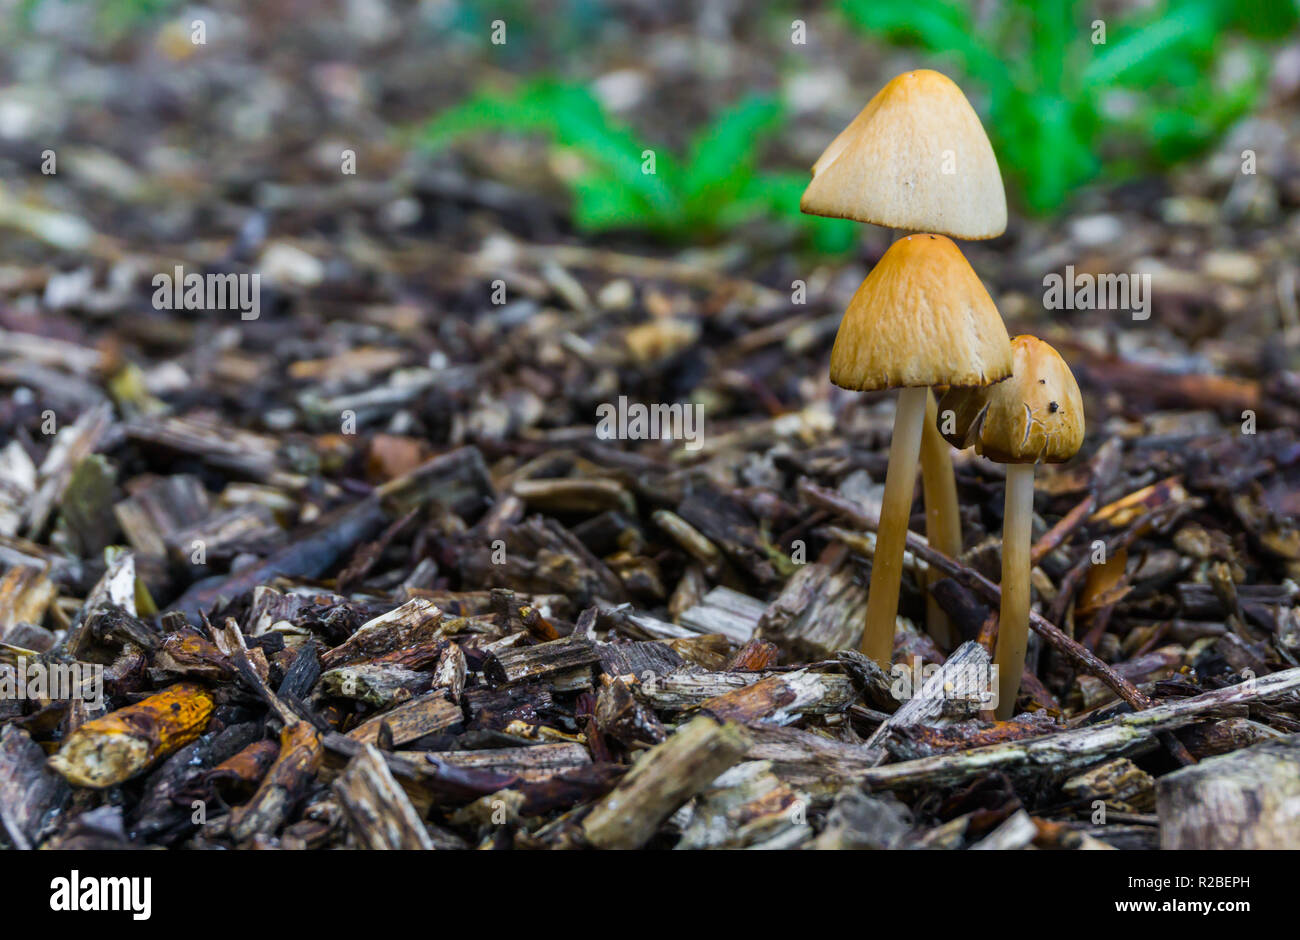 Herbst im Wald weiße dunce cap Pilze in Makro Nahaufnahme Wald Hintergrund Stockfoto